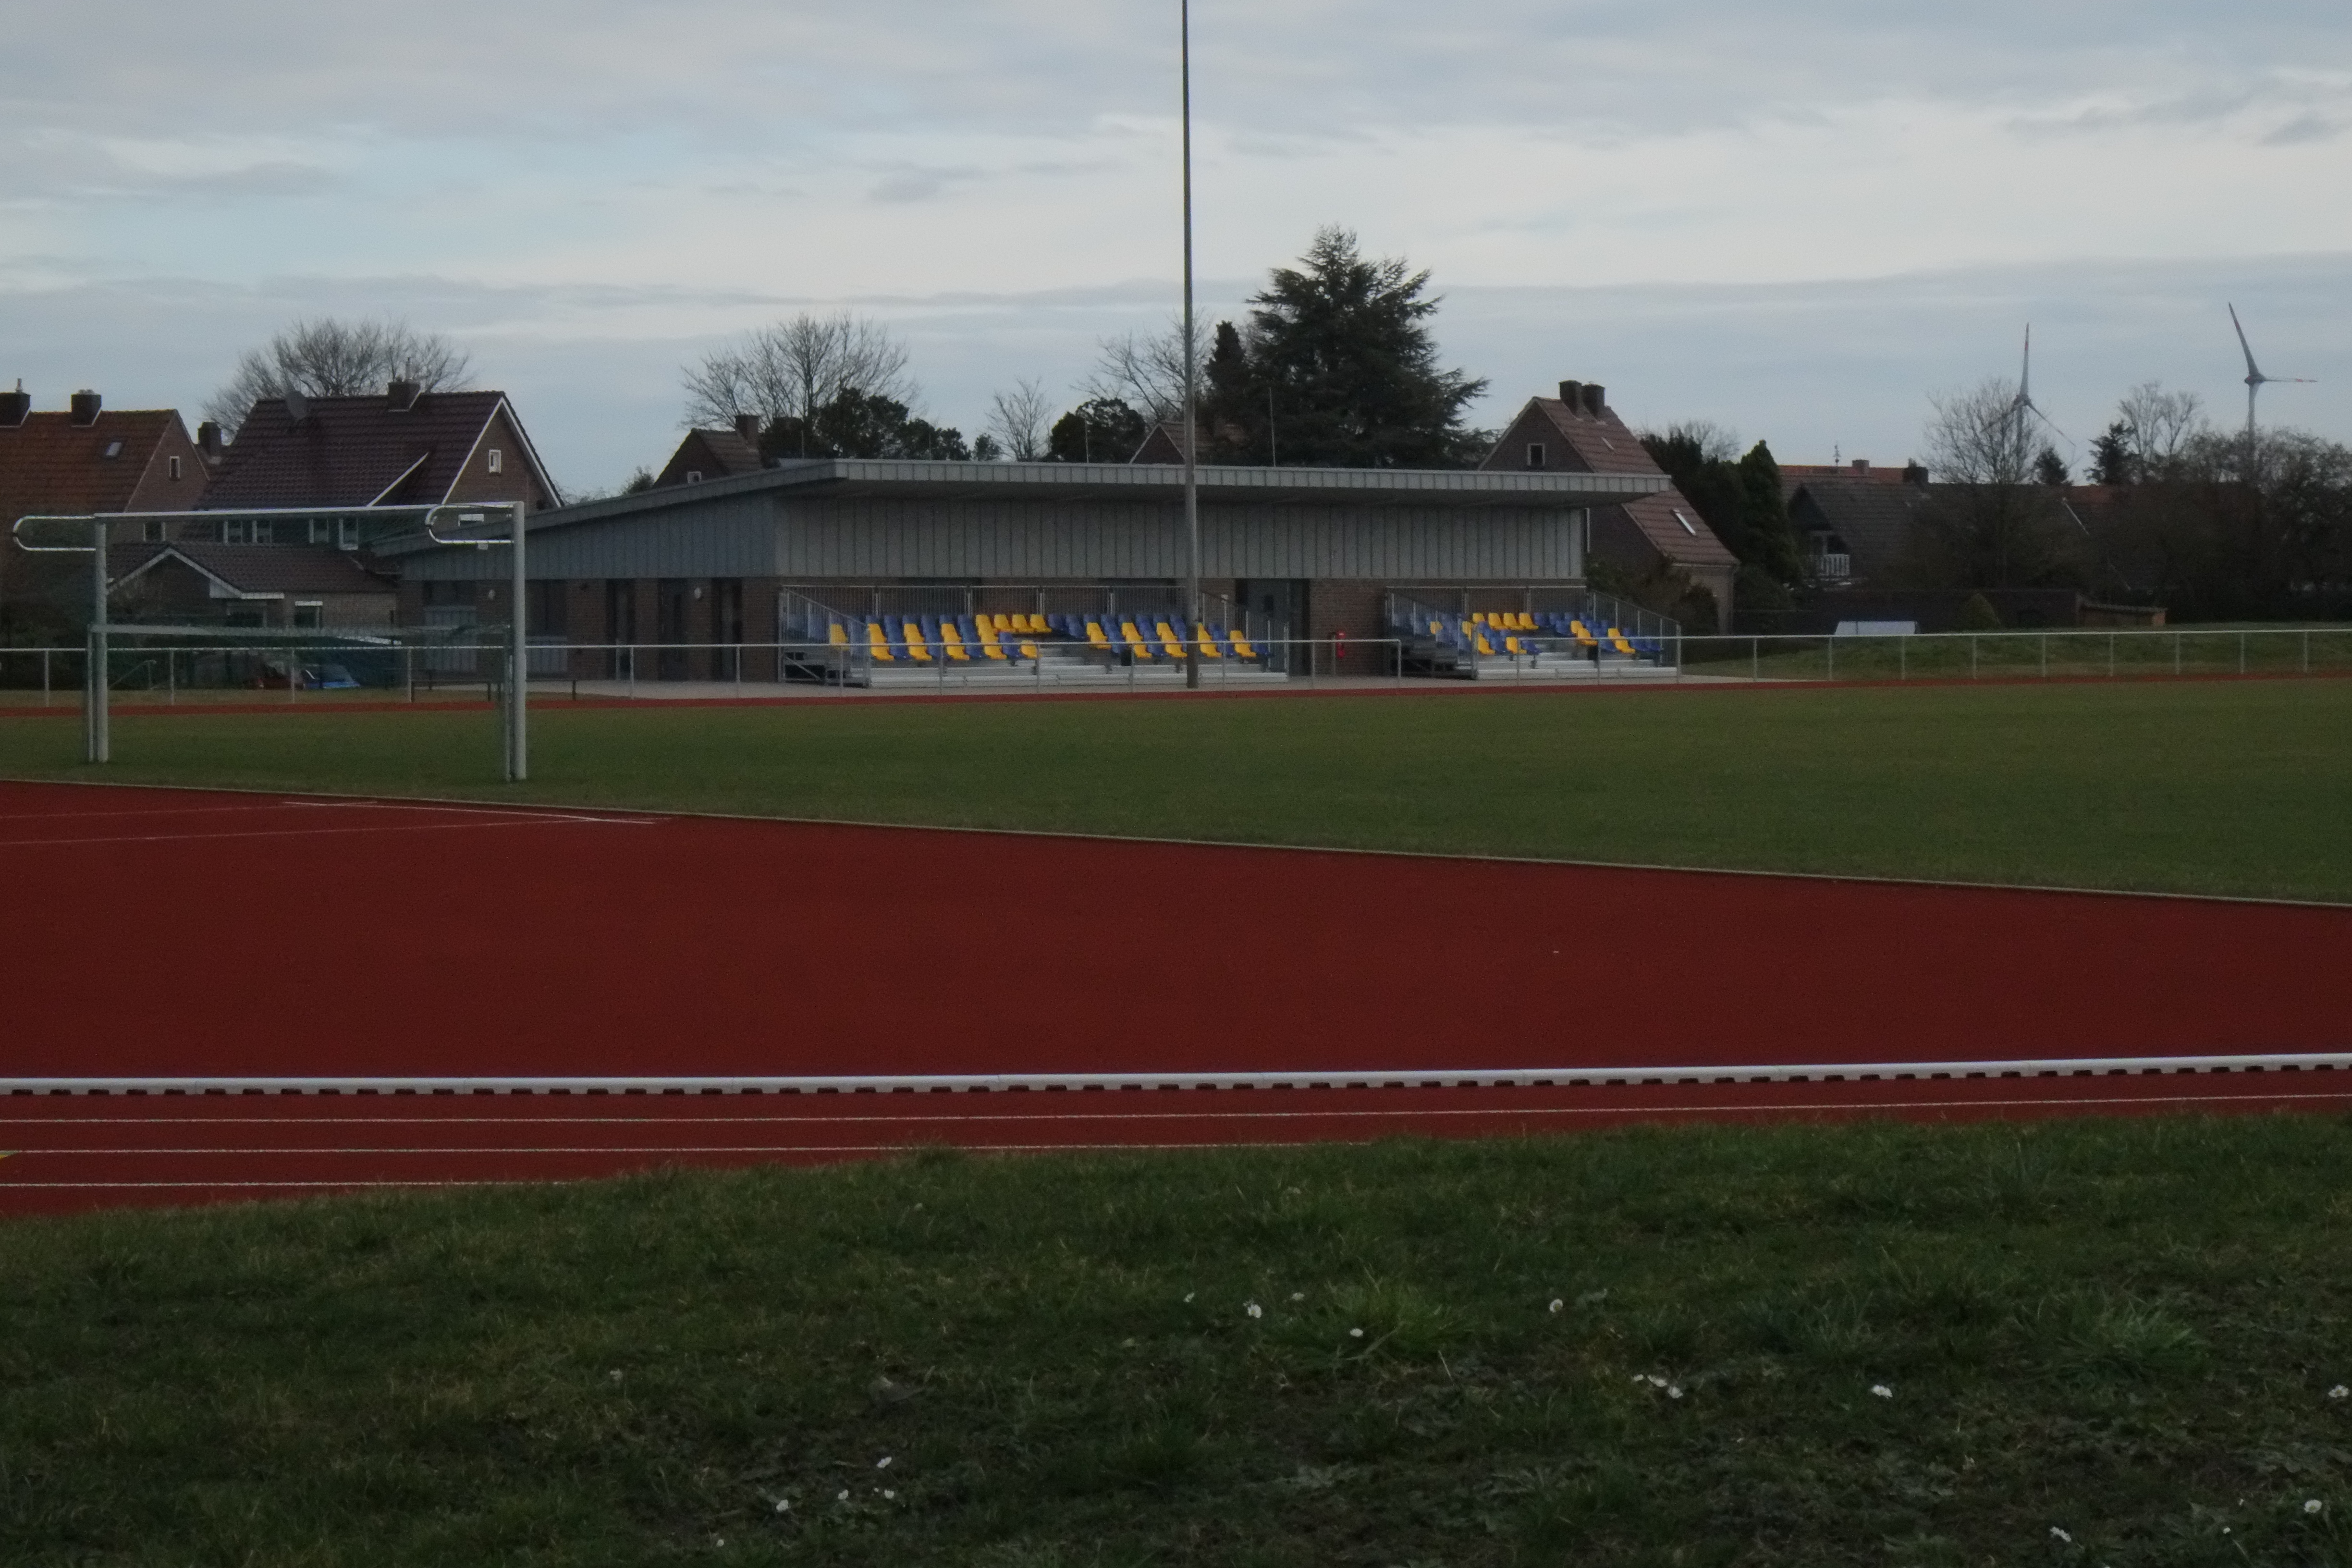 Das Bild zeigt einen Sportplatz mit Fußballplatz, Tor und Zuschauertribüne.